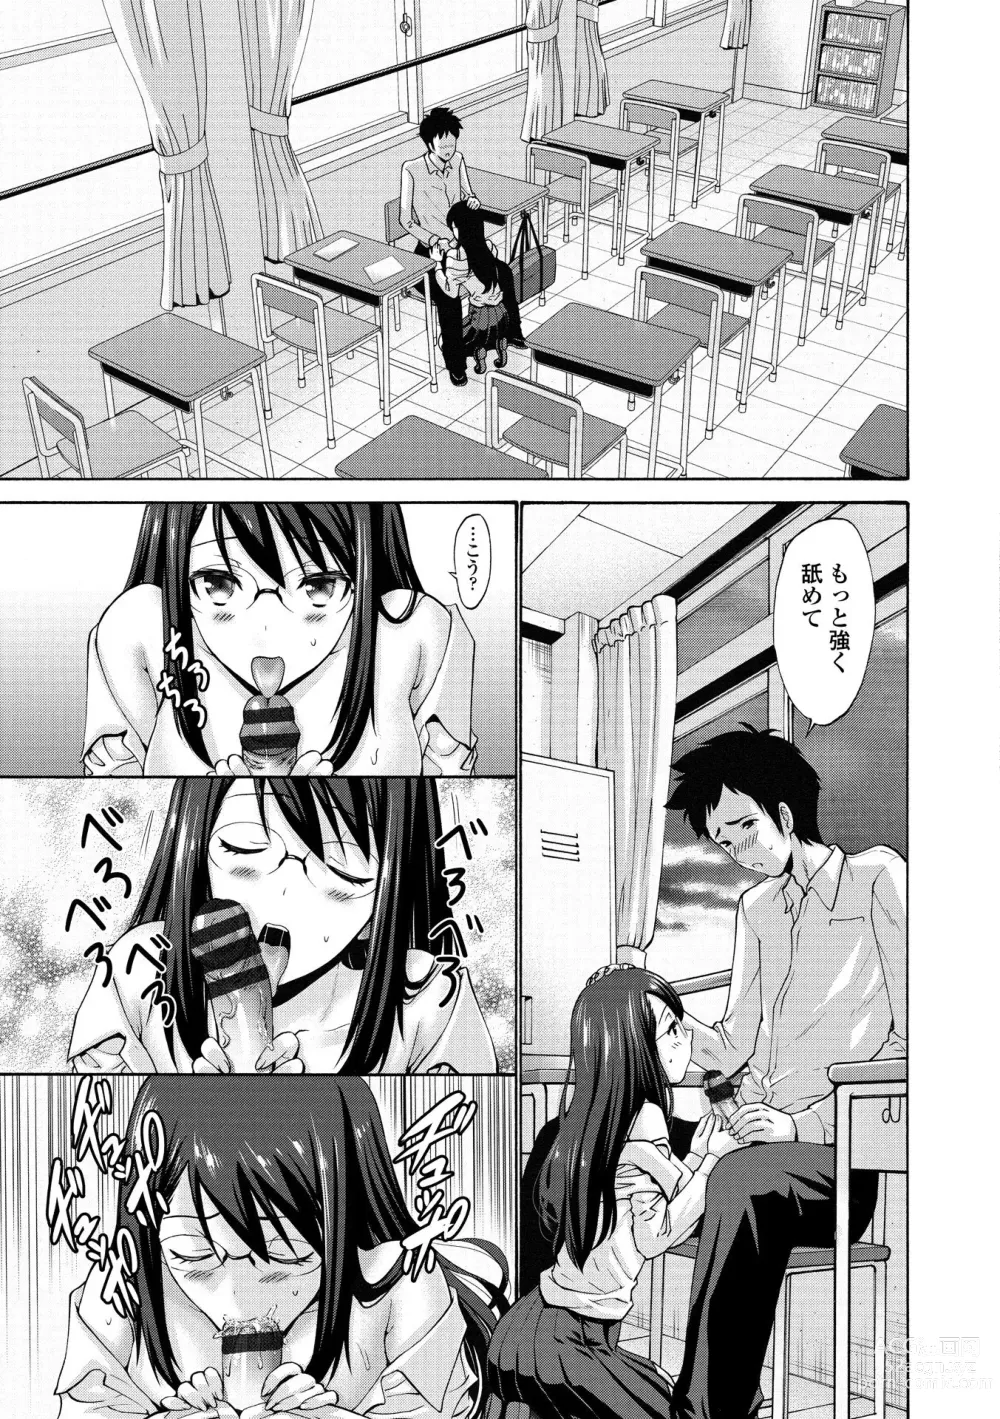 Page 197 of manga Imouto no Naka wa Ii mono da